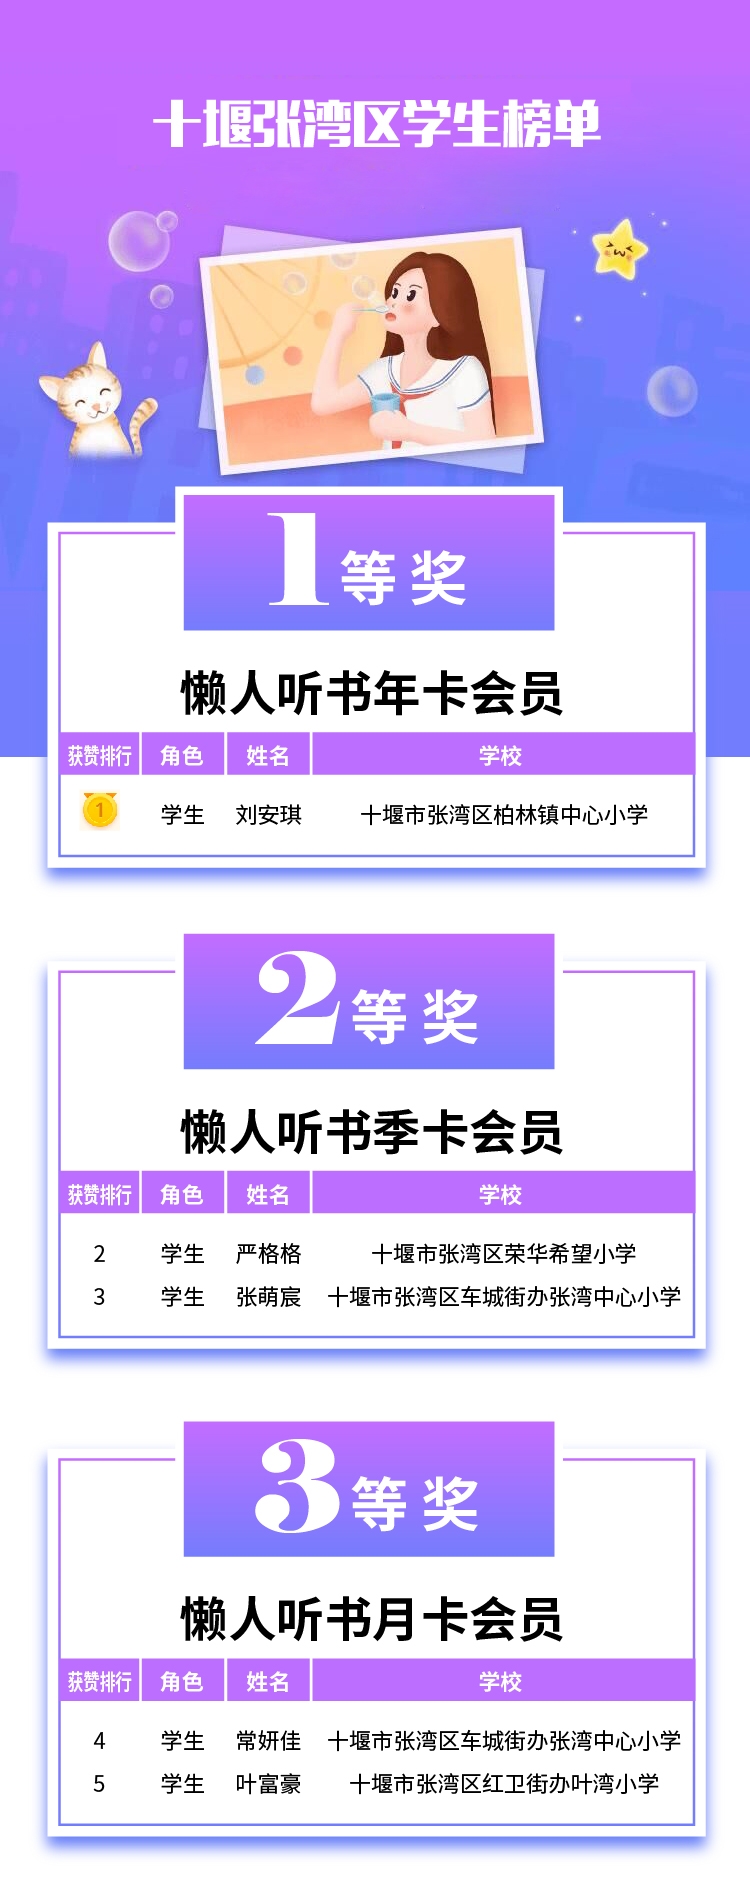 六一活动获奖名单-06张湾区学生.jpg